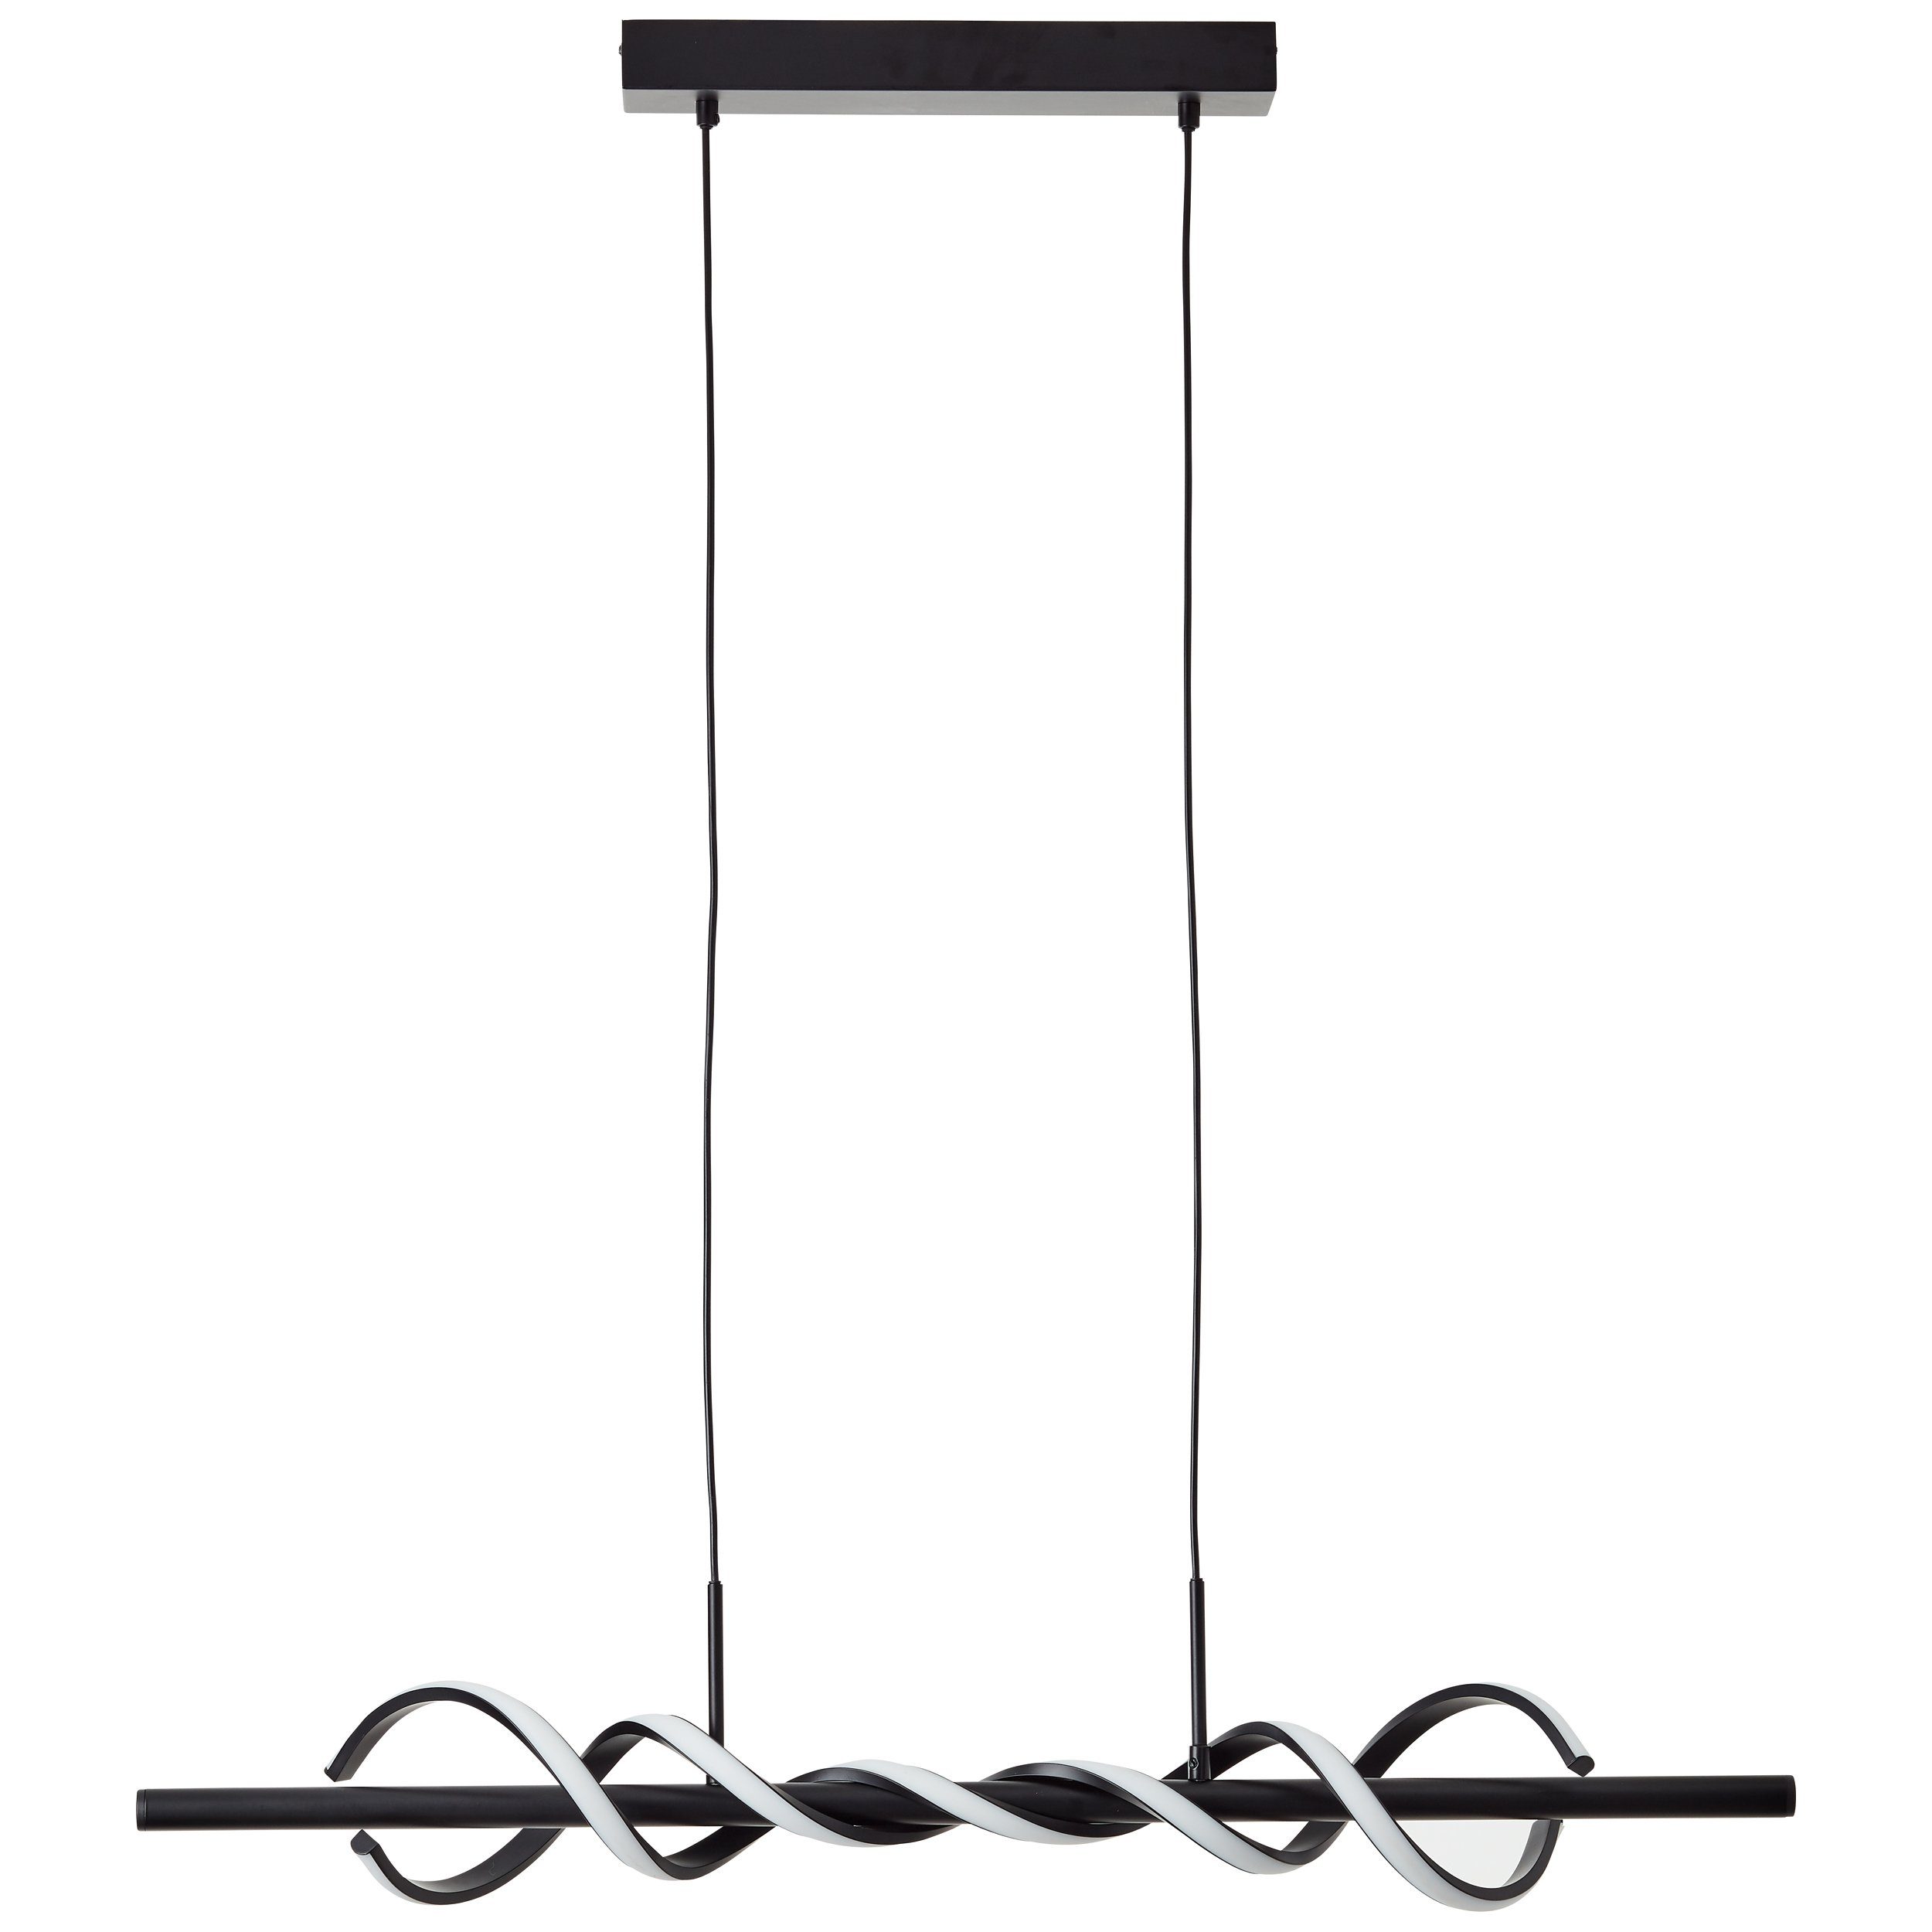 Brilliant Pendelleuchte Amalie, schwarz, integ Amalie 1x LED Metall/Kunststoff, 95cm Pendelleuchte LED